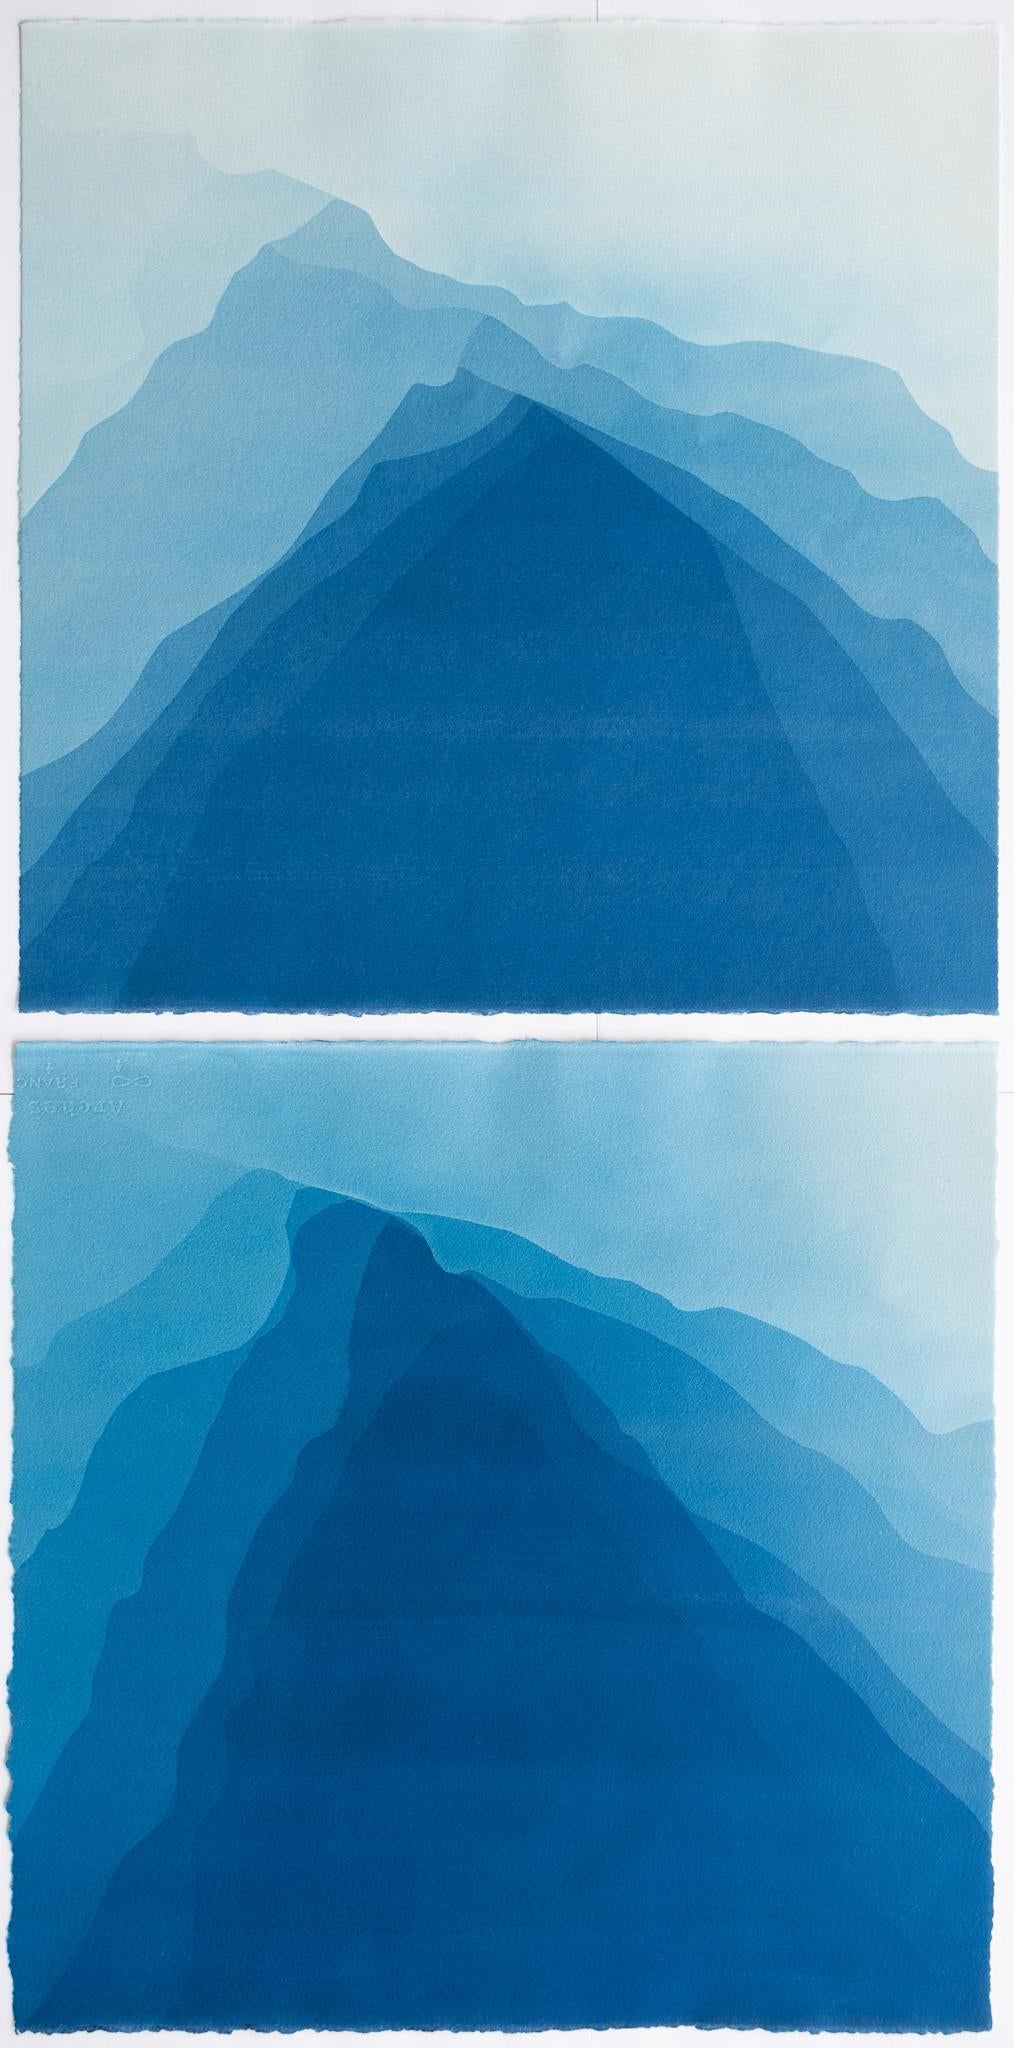 Diptyque The Highest Mountain Diptyque II (Deux cyanotypes abstraits imprimés à la main de 22 x 22 pouces)